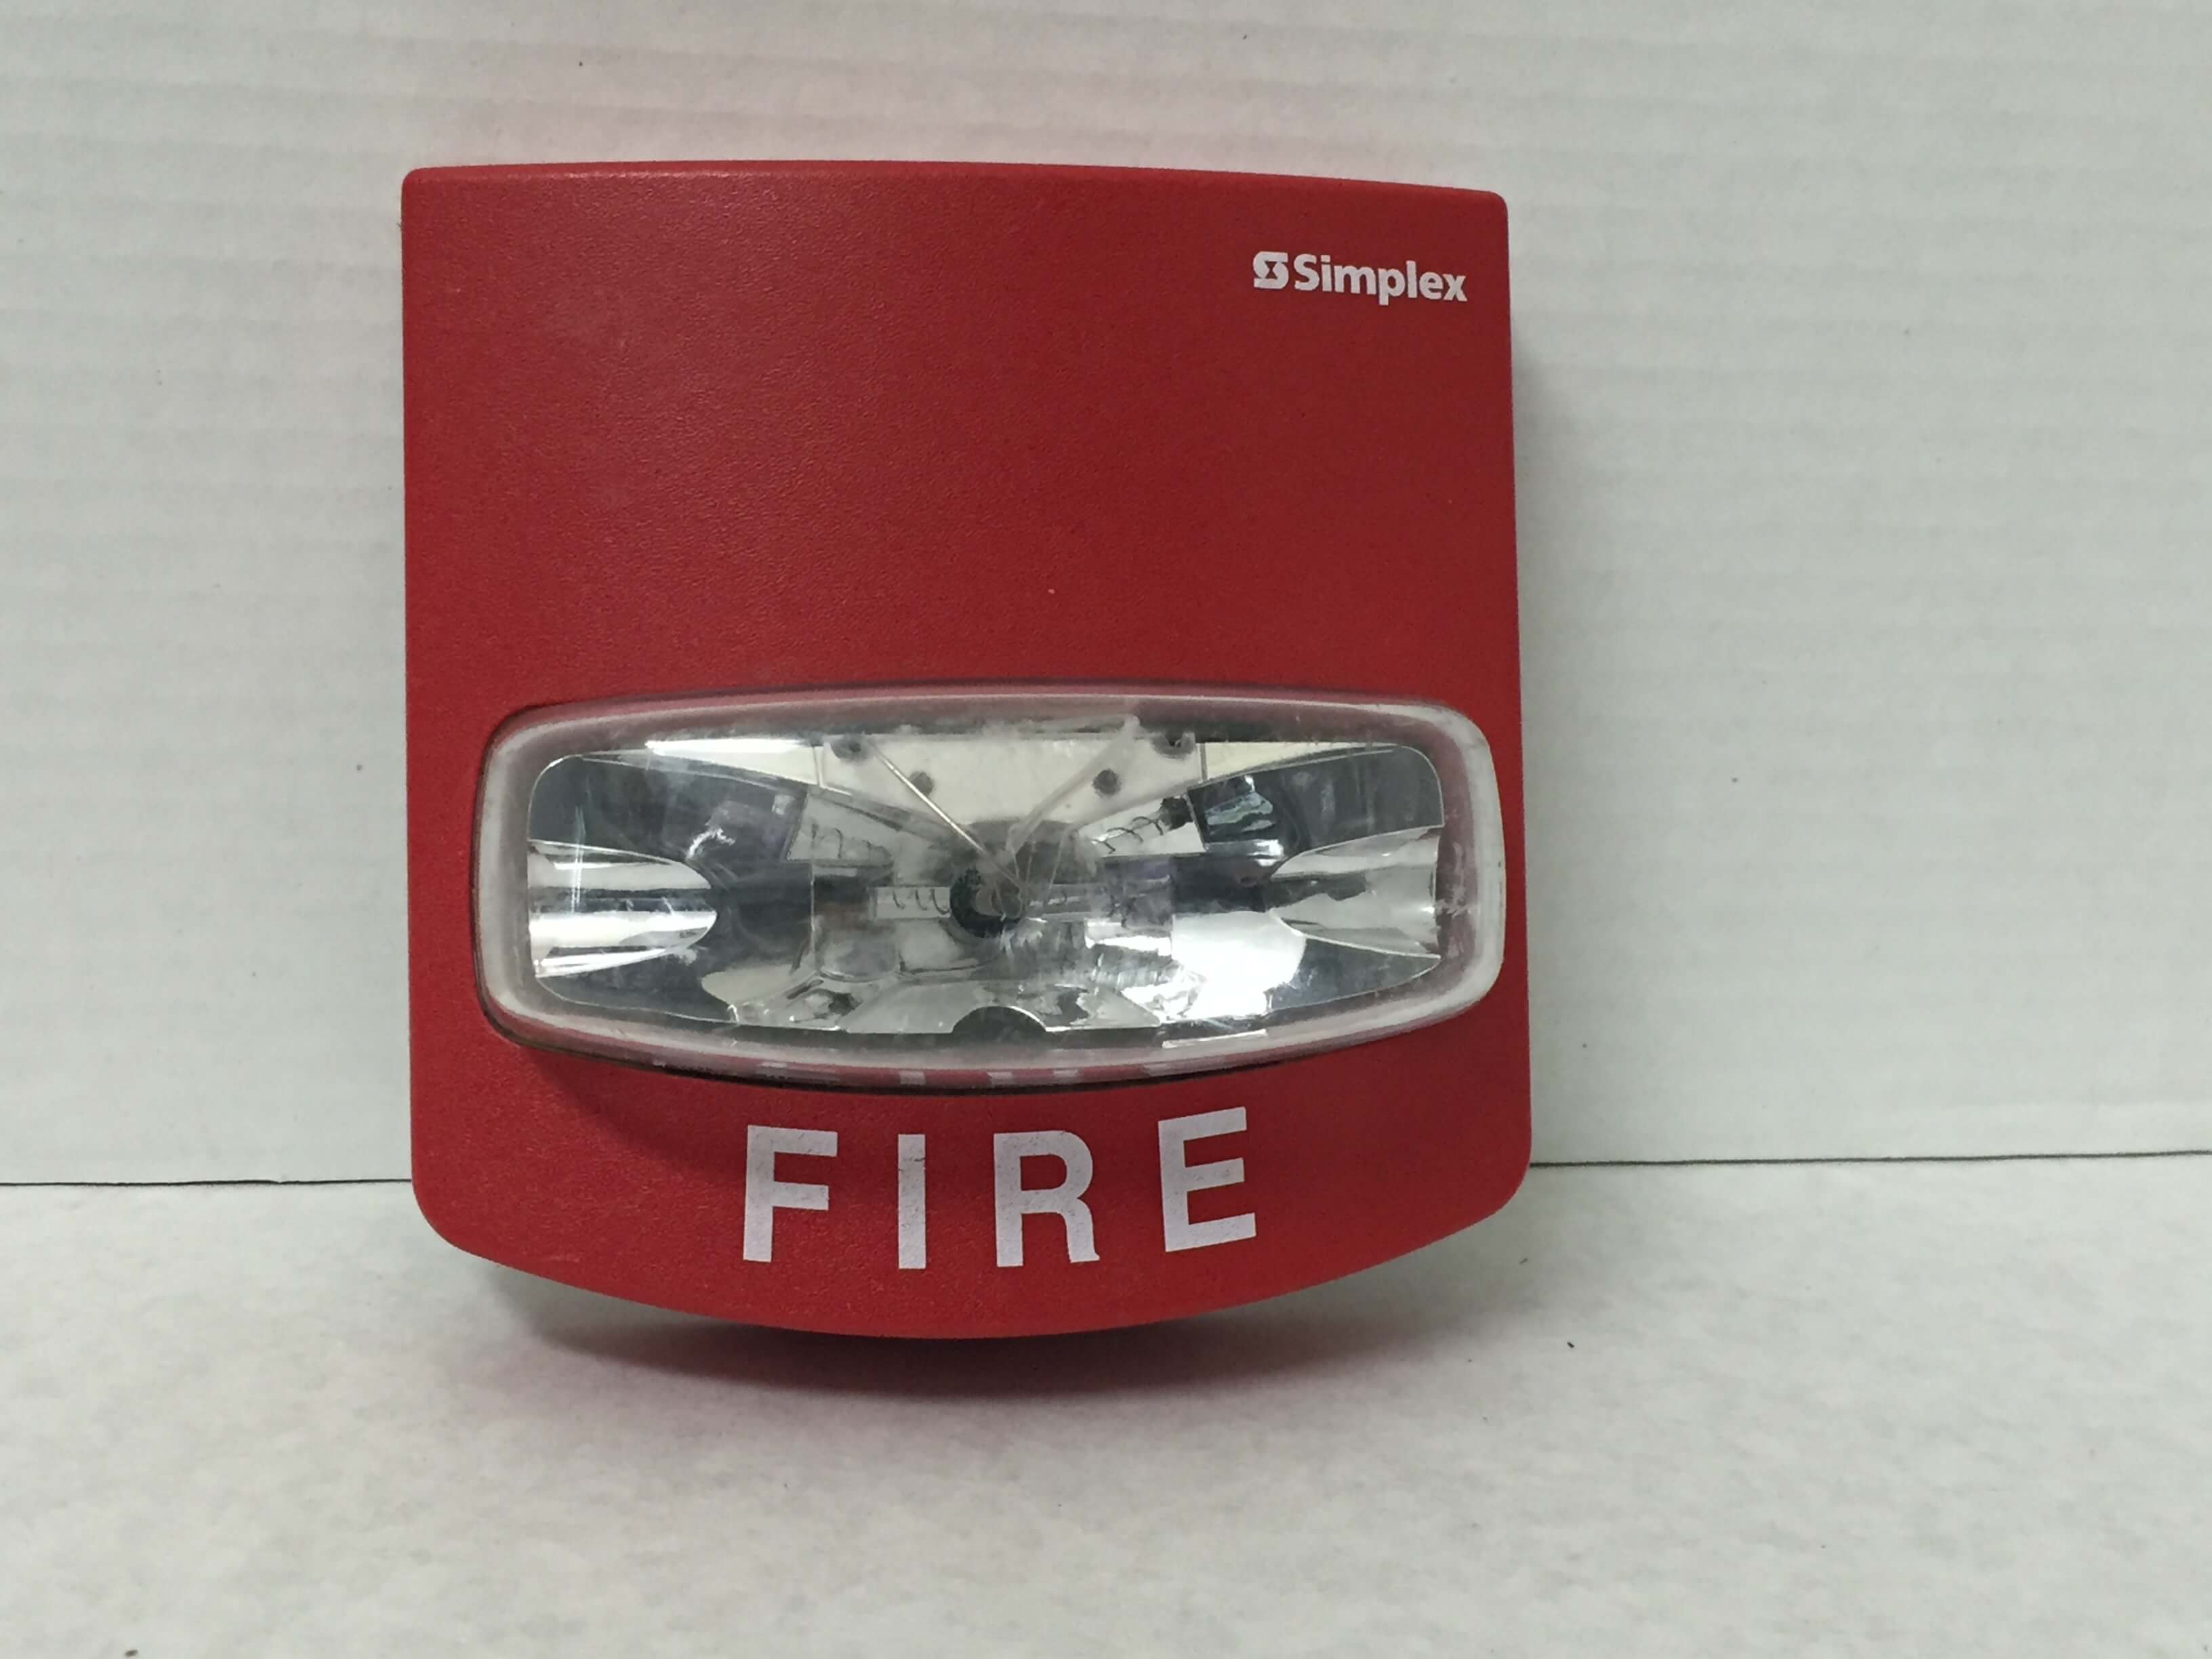 Simplex 4904-9169 - FireAlarms.tv - jjinc24/U8oL0's Fire Alarm ...